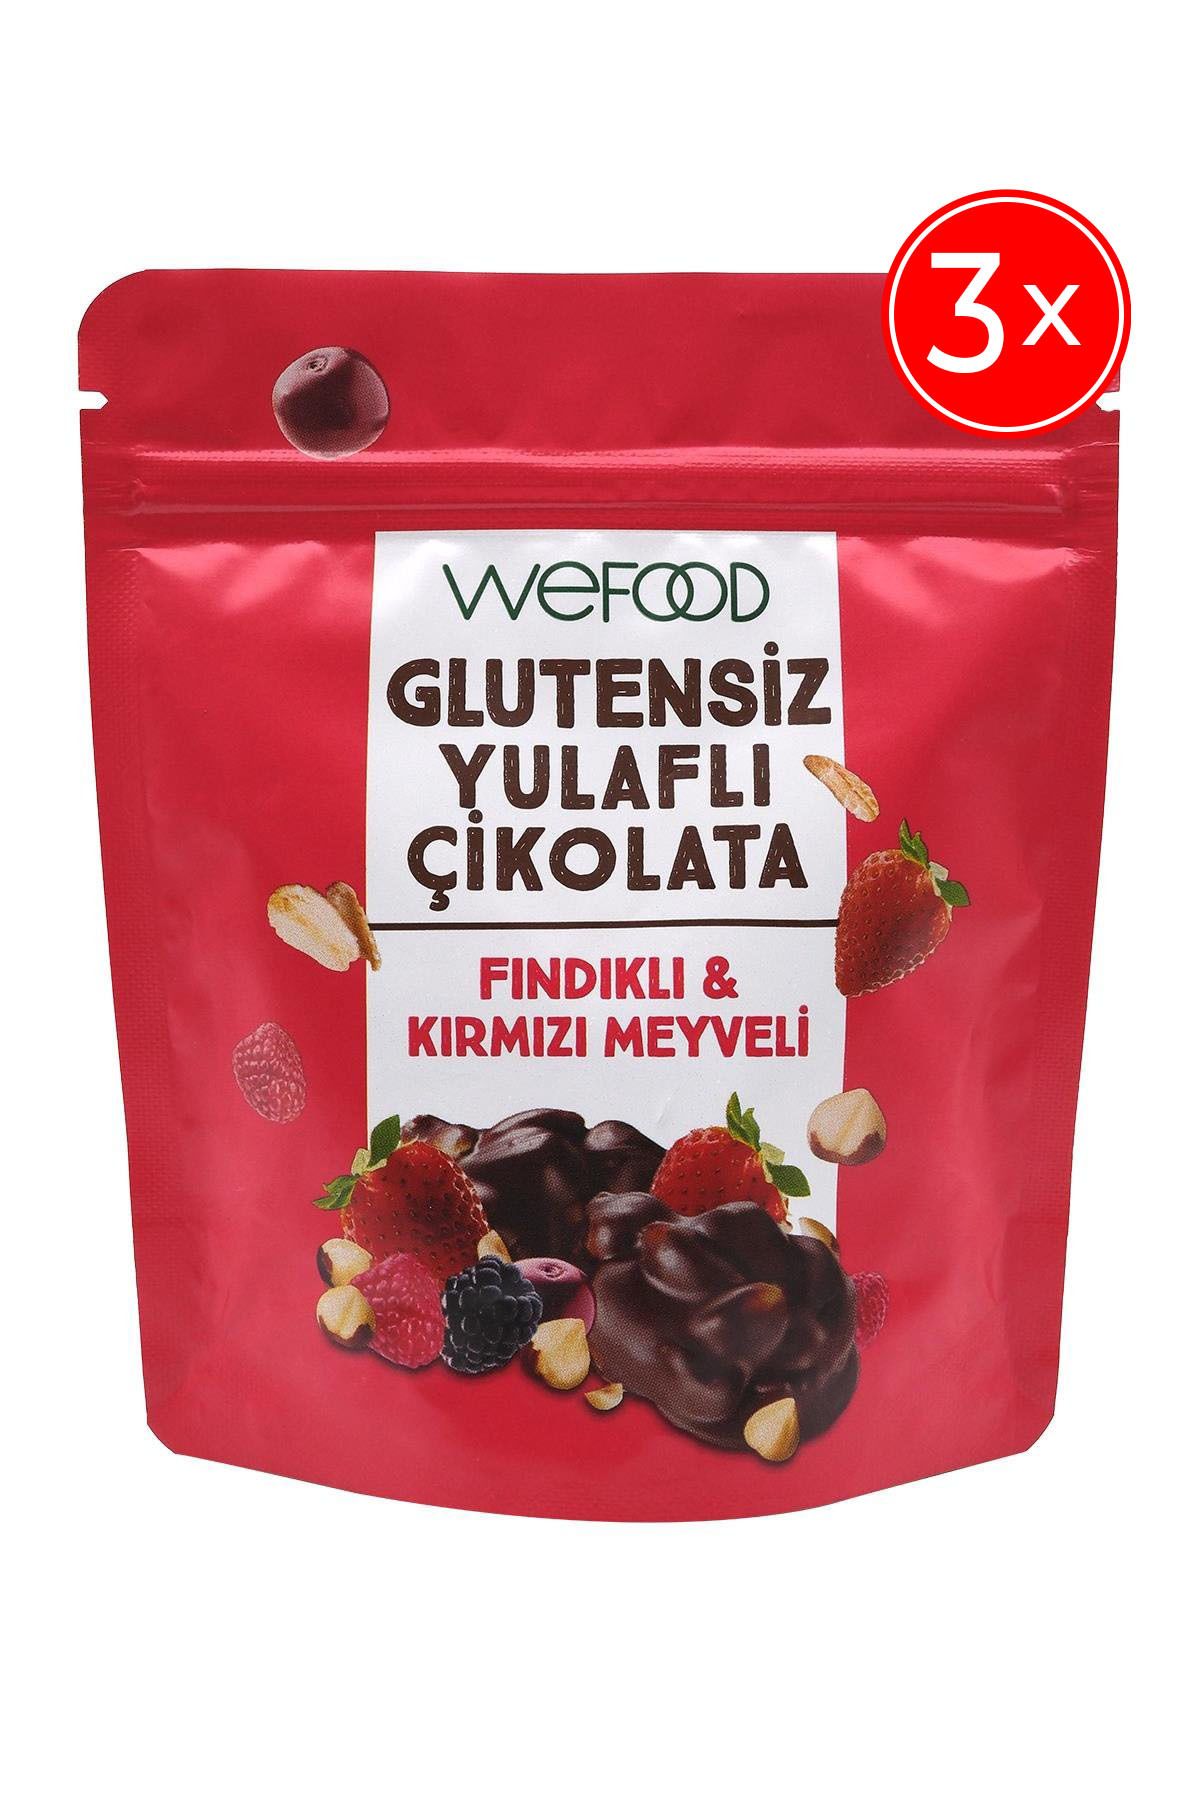 Wefood Glutensiz Yulaflı Çikolata Fındıklı & Kırmızı Meyveli 40 gr 3'lü